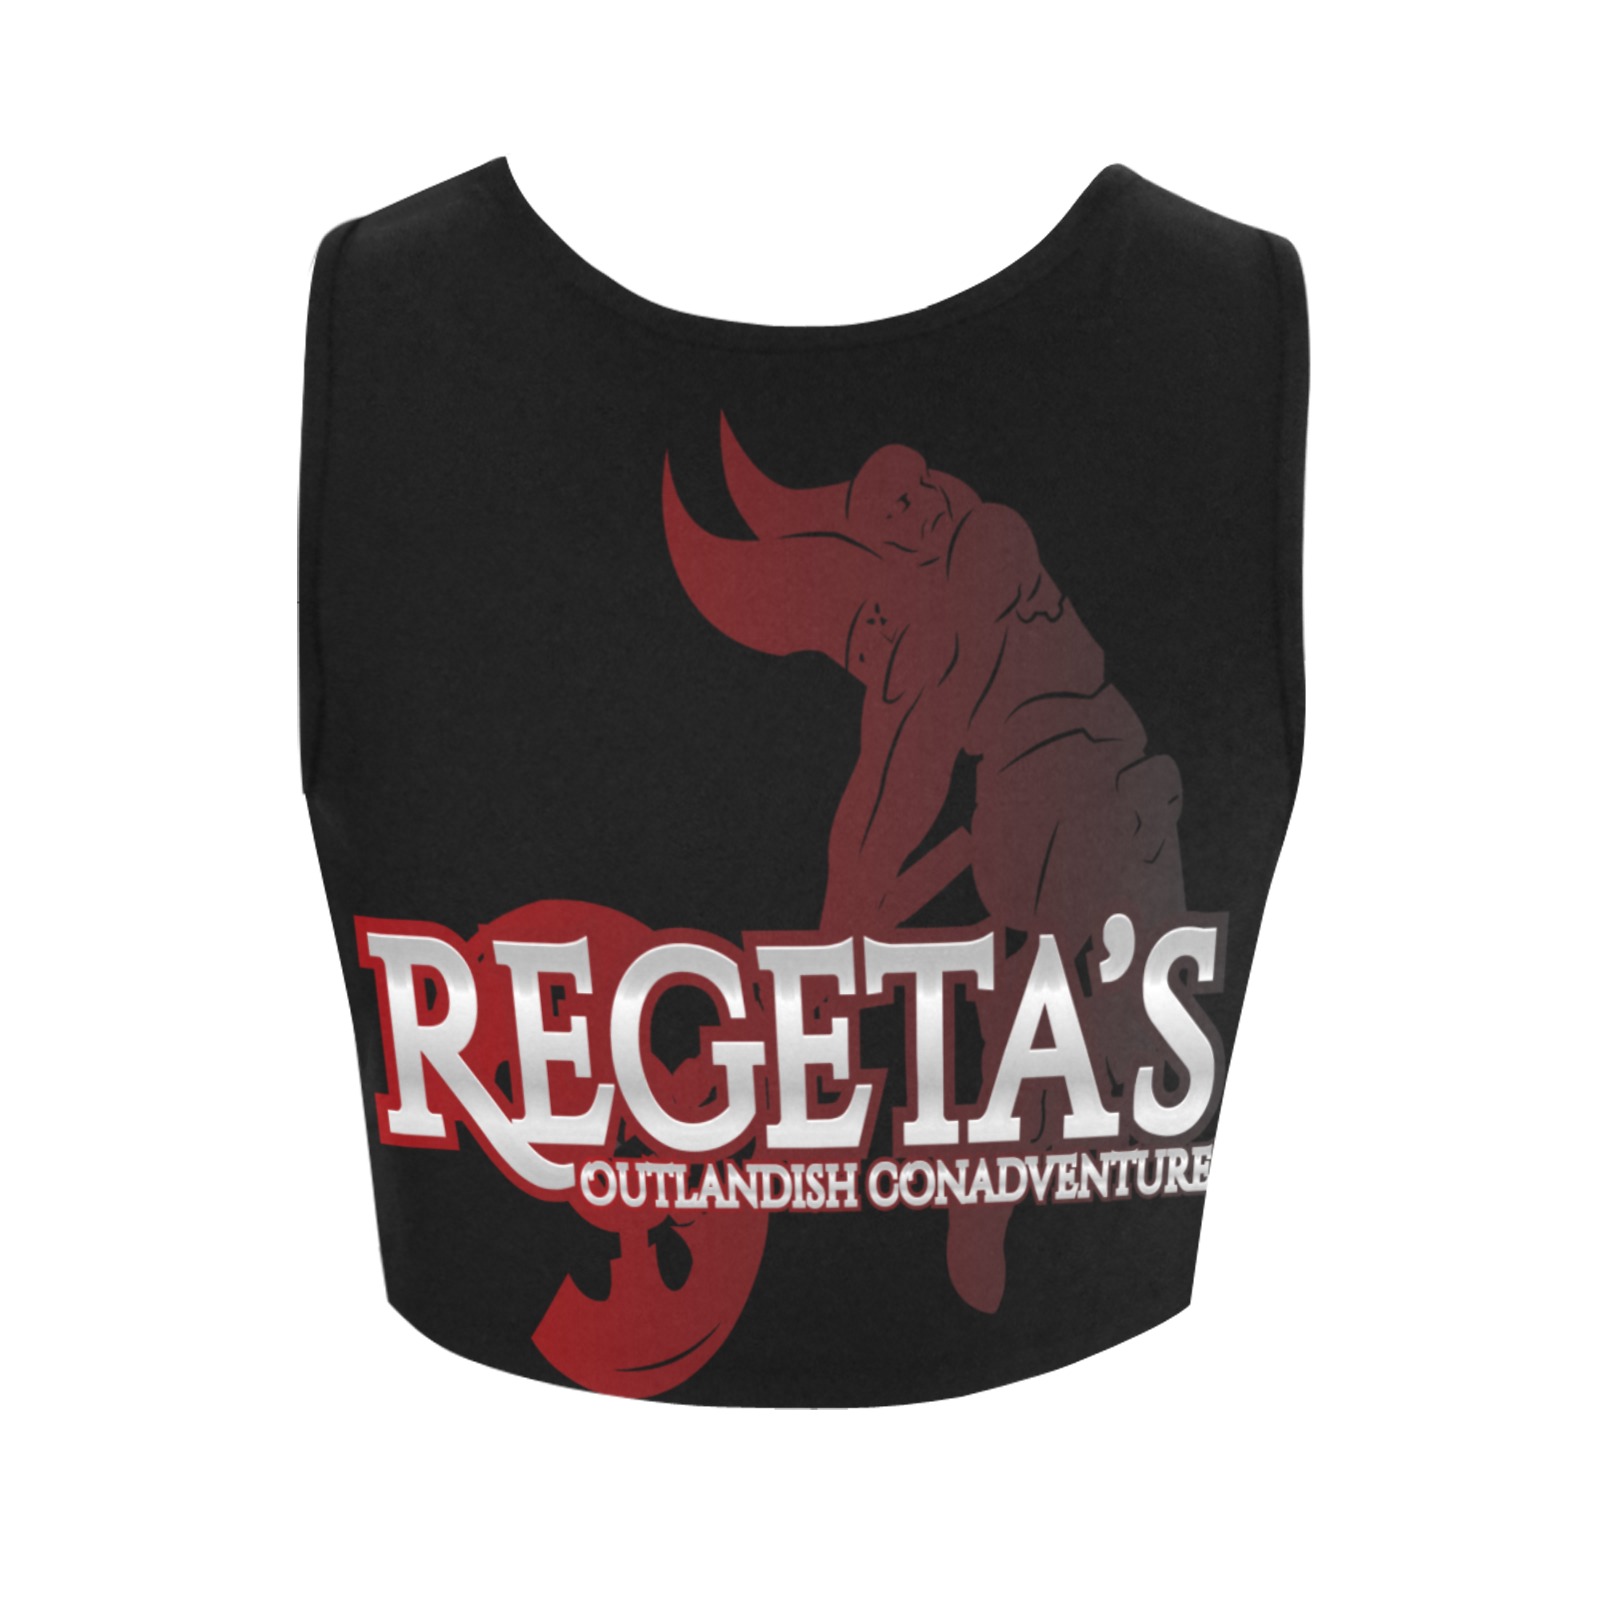 REGETA’S OUTLANDISH CONADVENTURES black red Women's Crop Top (Model T42)